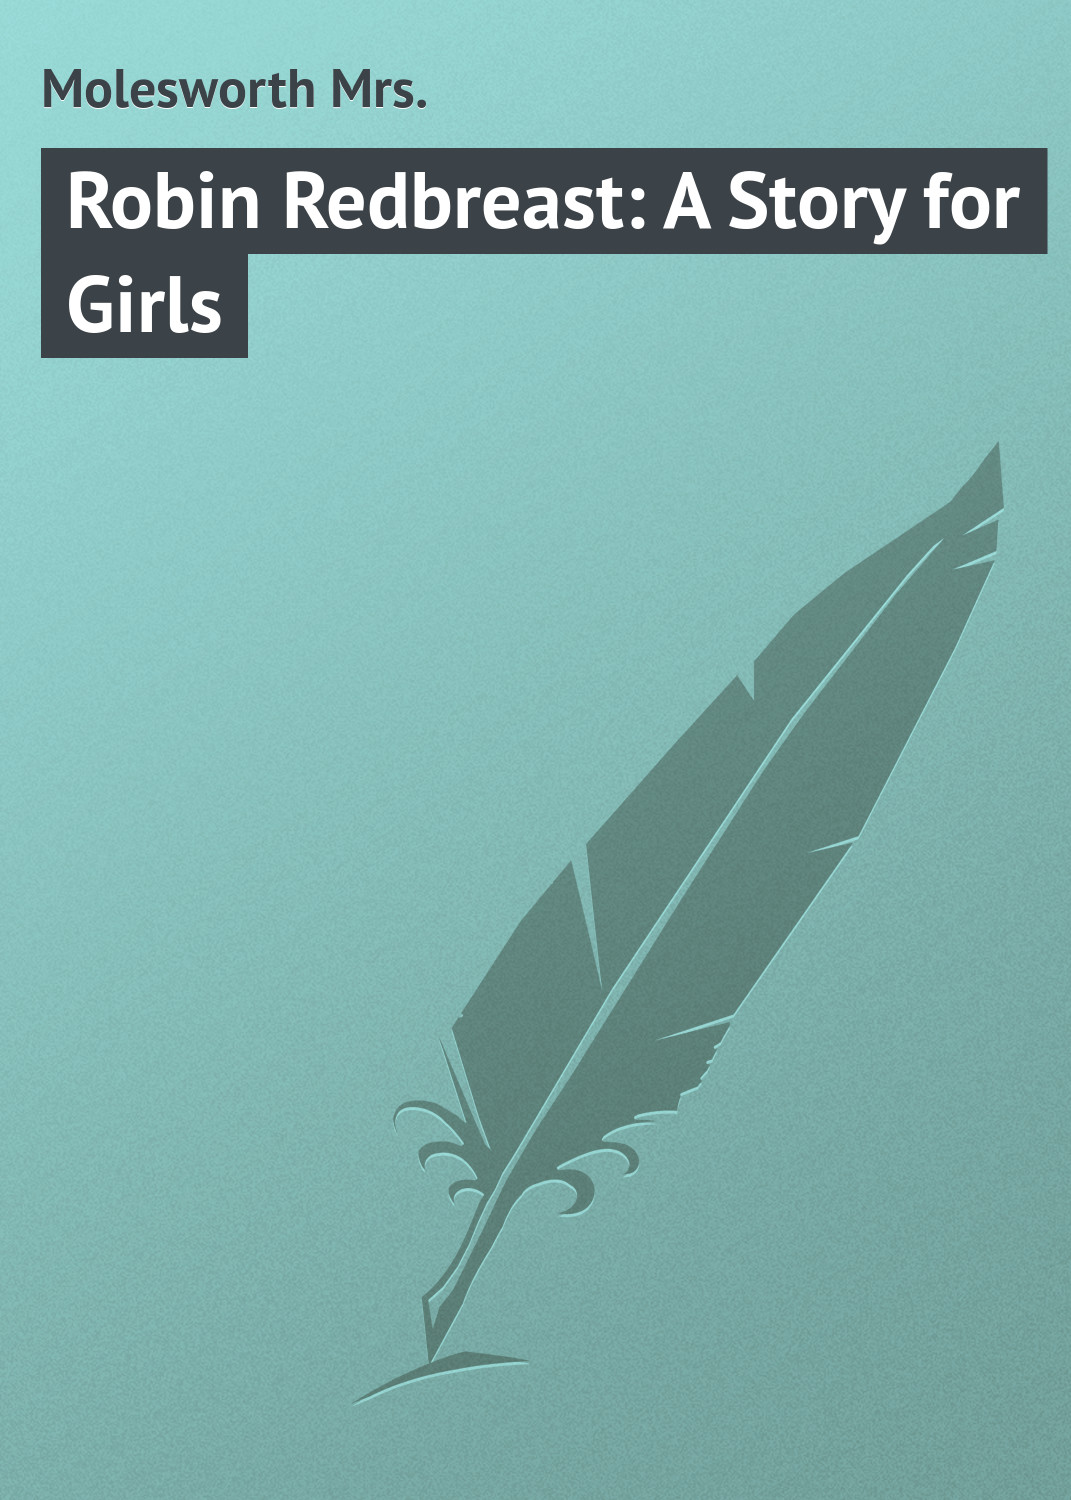 Книга Robin Redbreast: A Story for Girls из серии , созданная Mrs. Molesworth, может относится к жанру Иностранные языки, Зарубежная классика, Зарубежные детские книги. Стоимость электронной книги Robin Redbreast: A Story for Girls с идентификатором 23145443 составляет 5.99 руб.